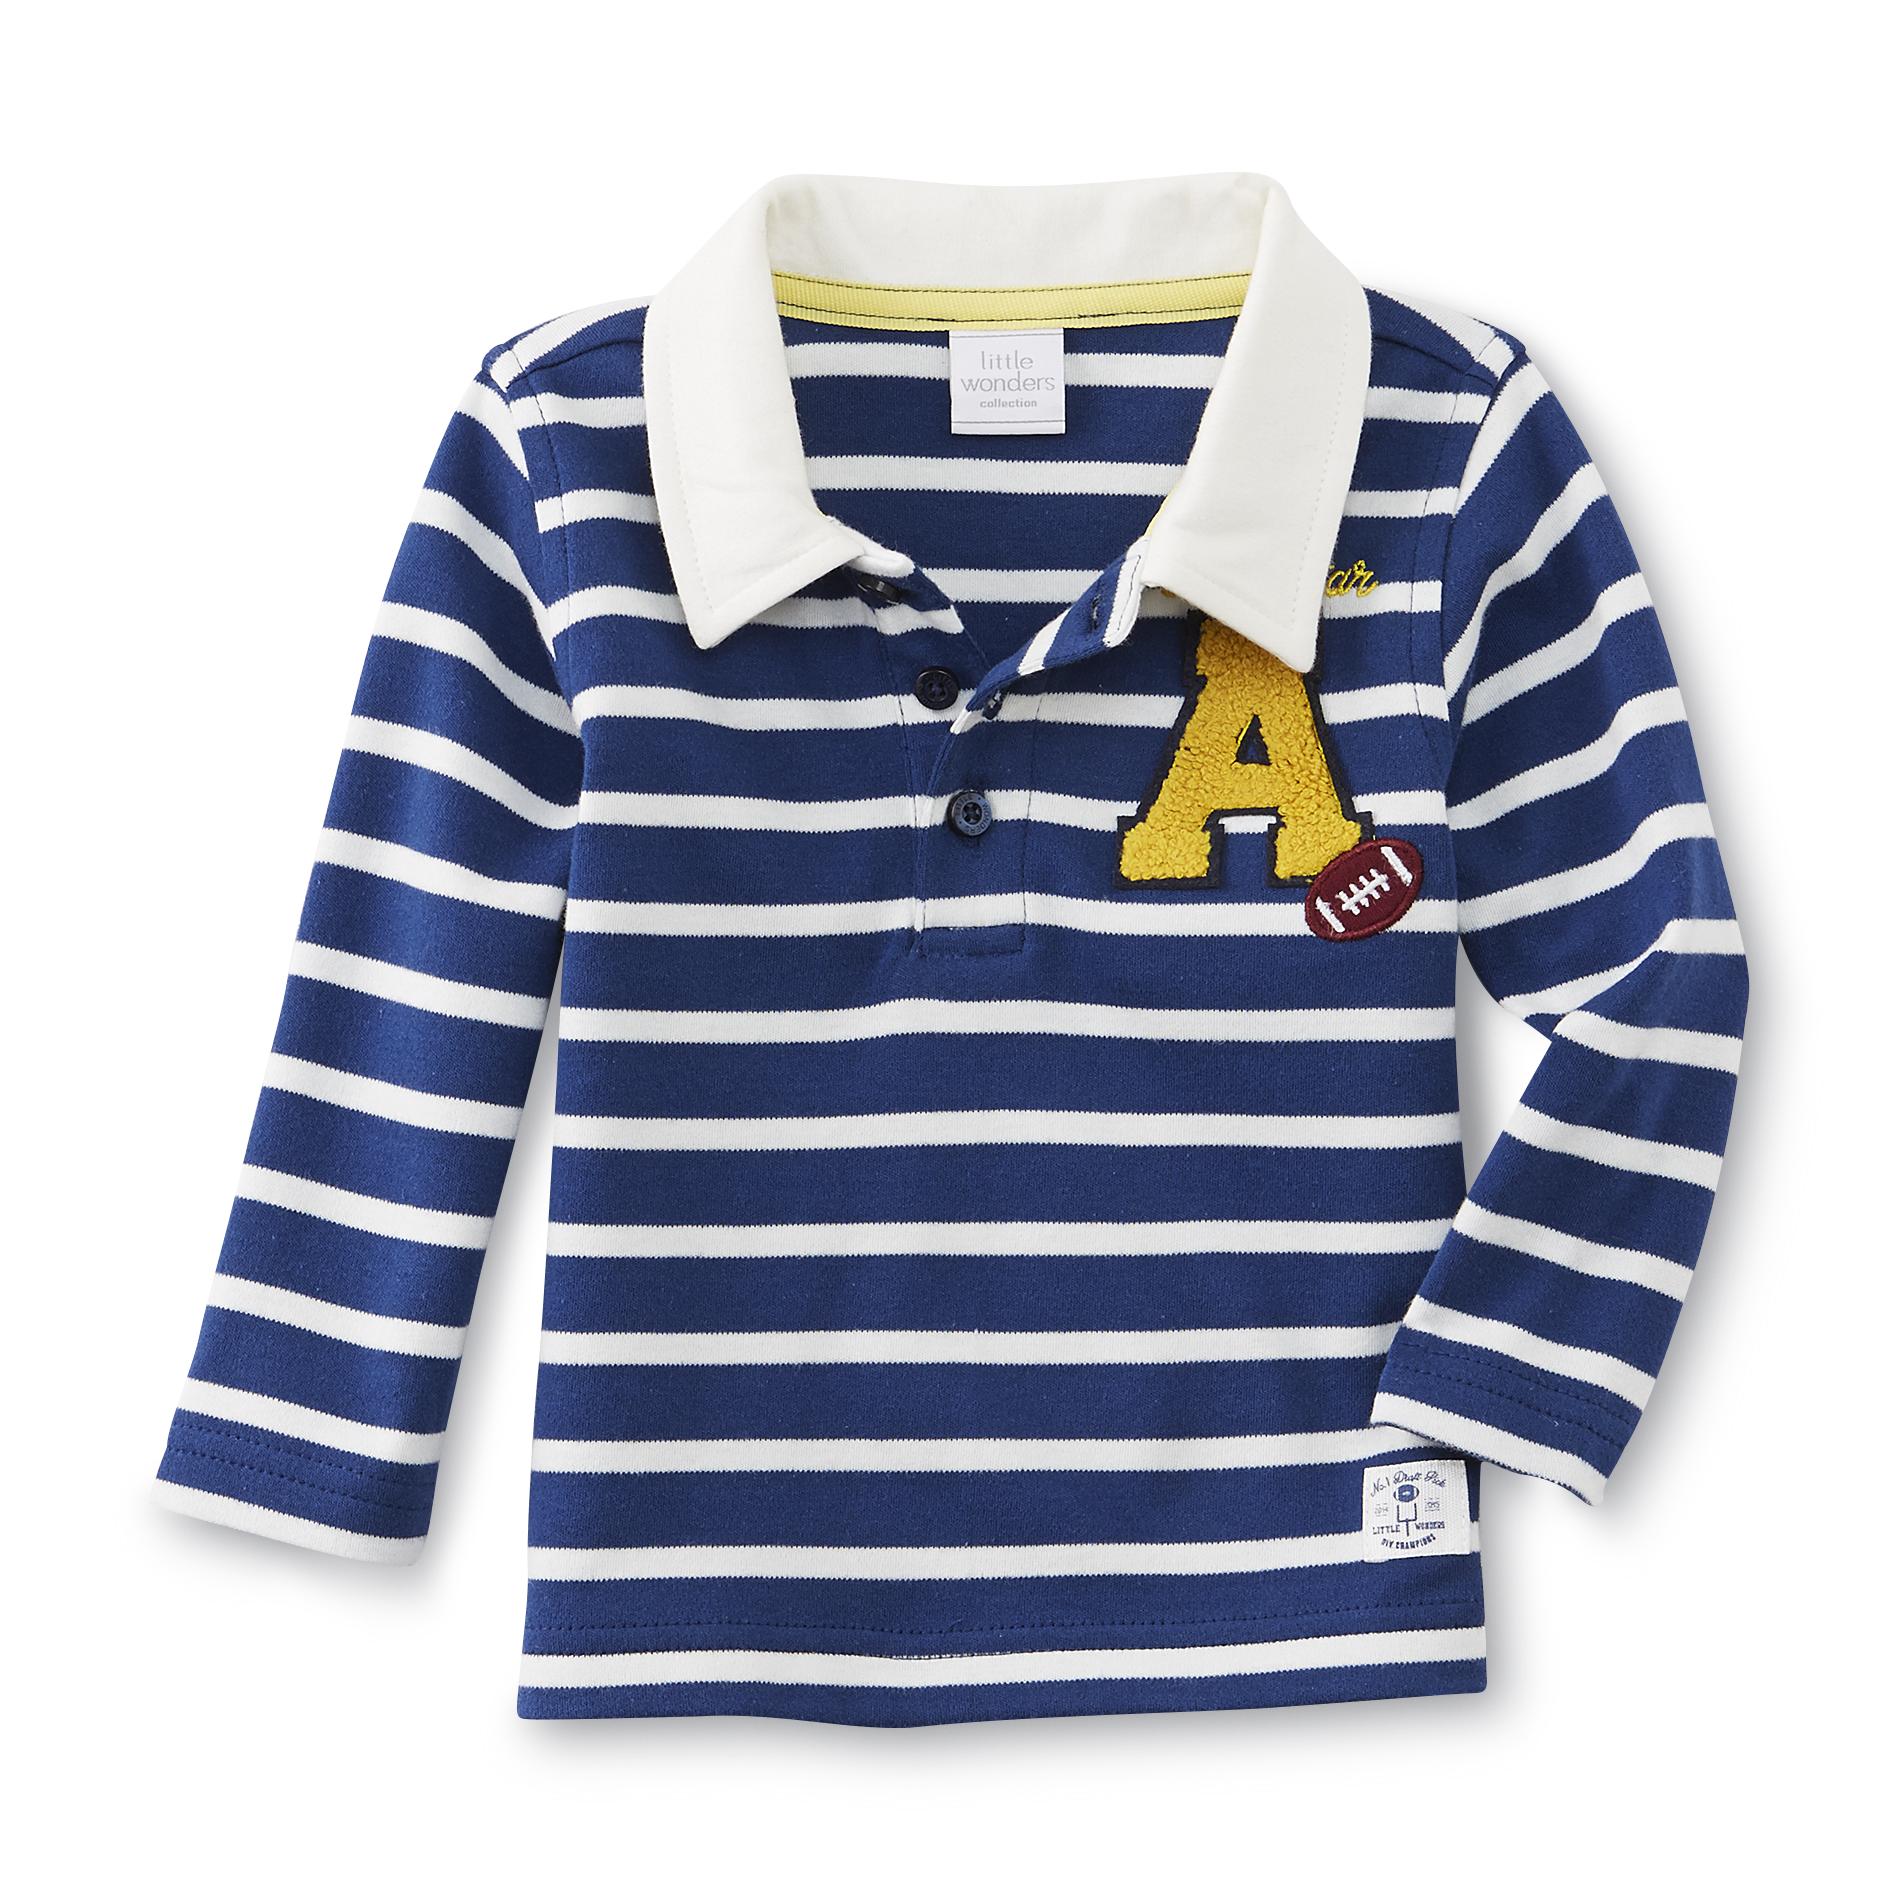 Little Wonders Newborn & Infant Boy's Long-Sleeve Polo - Striped